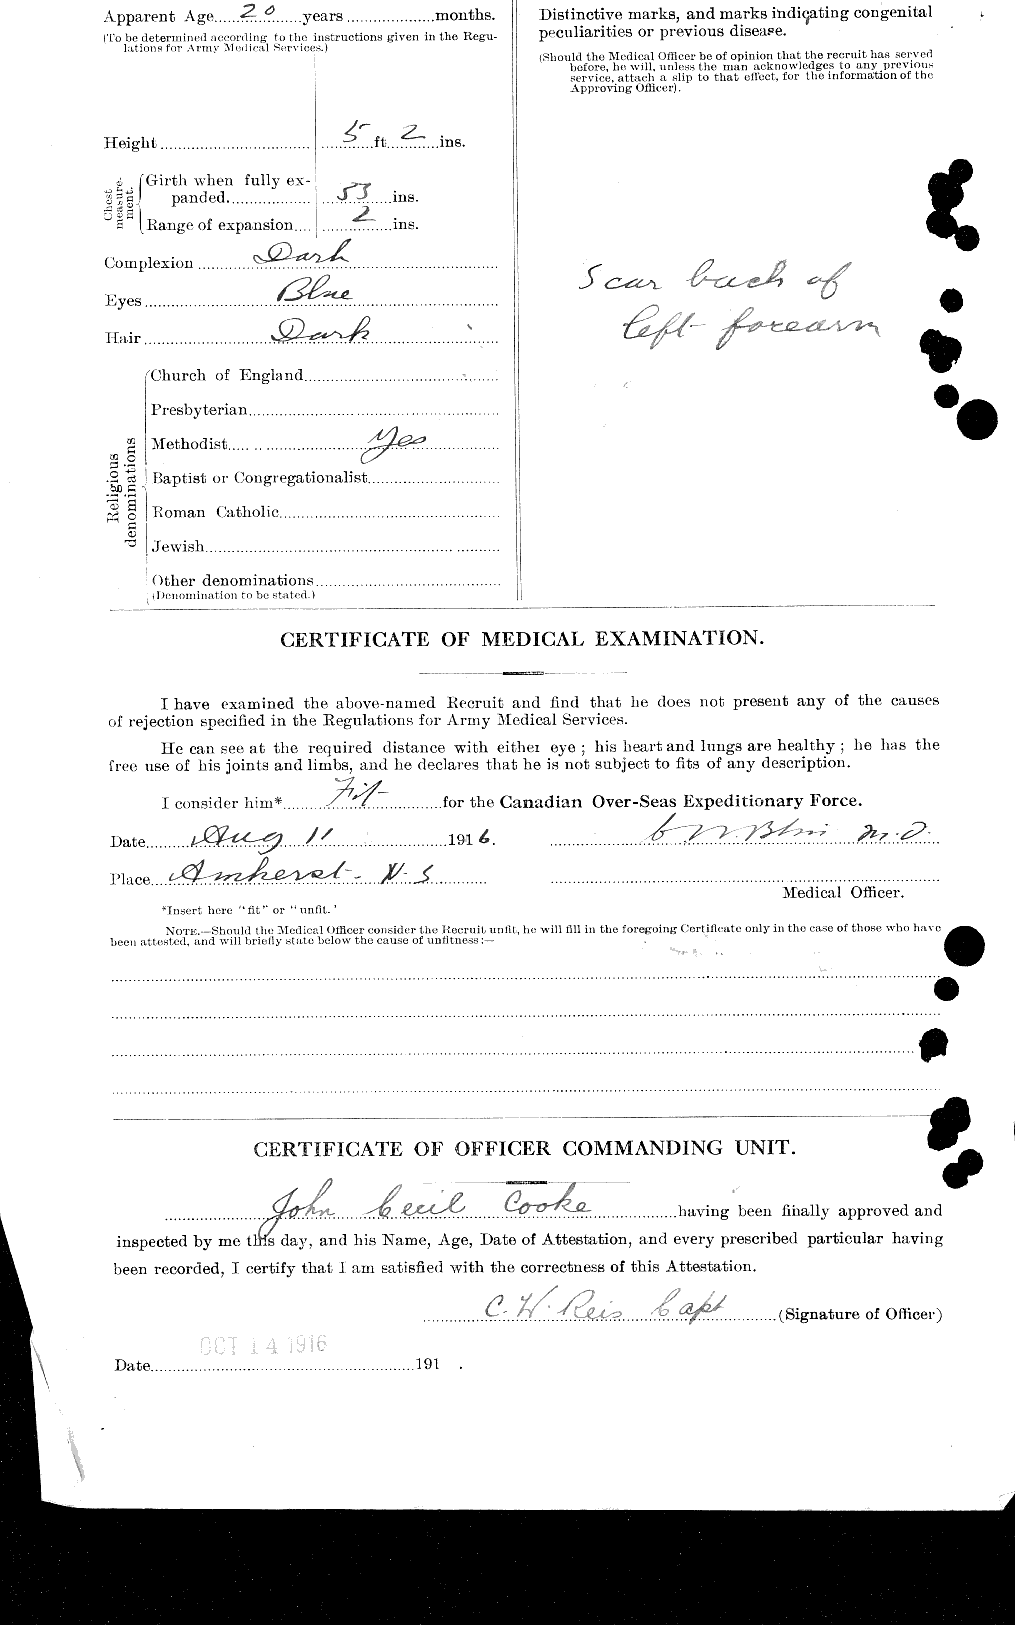 Dossiers du Personnel de la Première Guerre mondiale - CEC 047176b